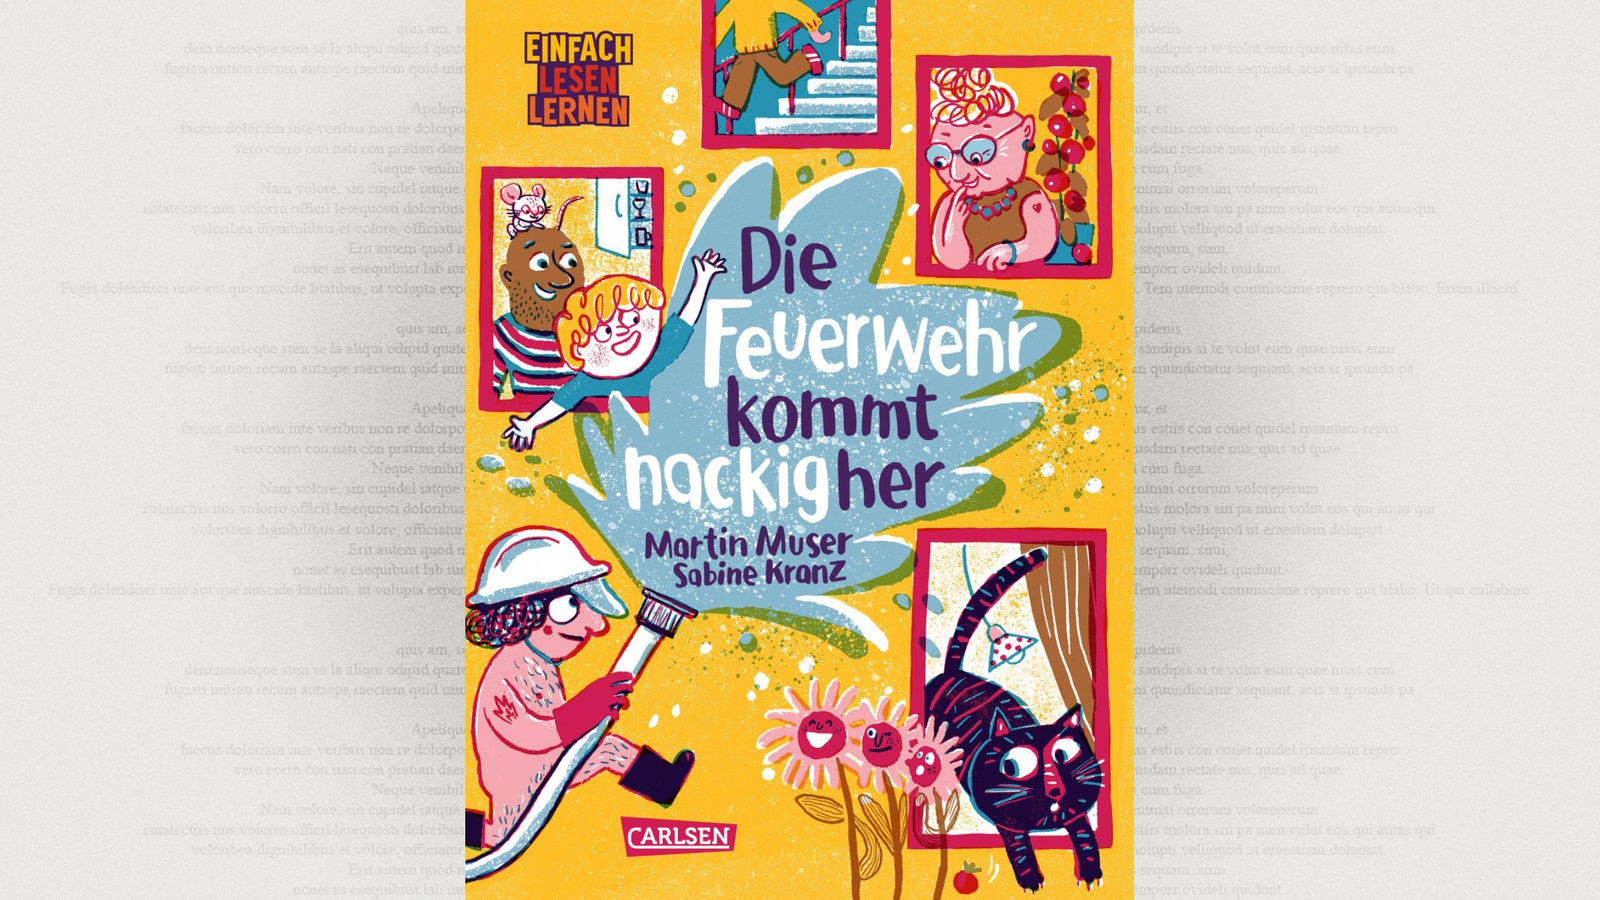 Cover: Martin Muser/ Sabine Kranz: Die Feuerwehr kommt nackig her, Carlsen